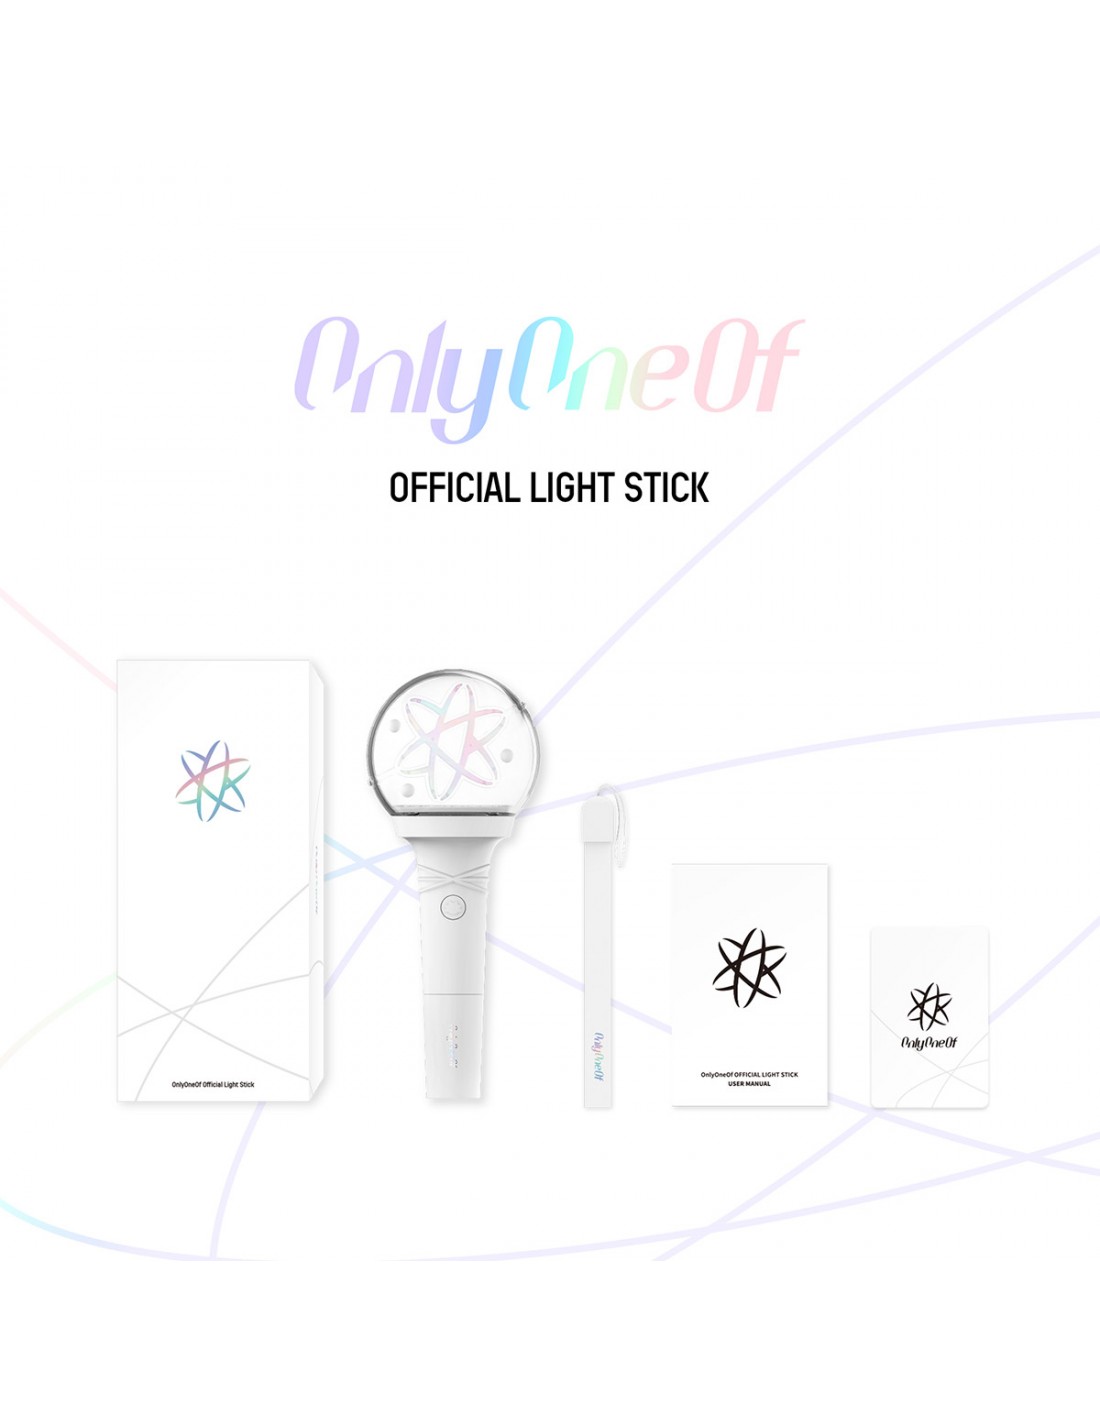 OnlyOneOf Official Light Stick